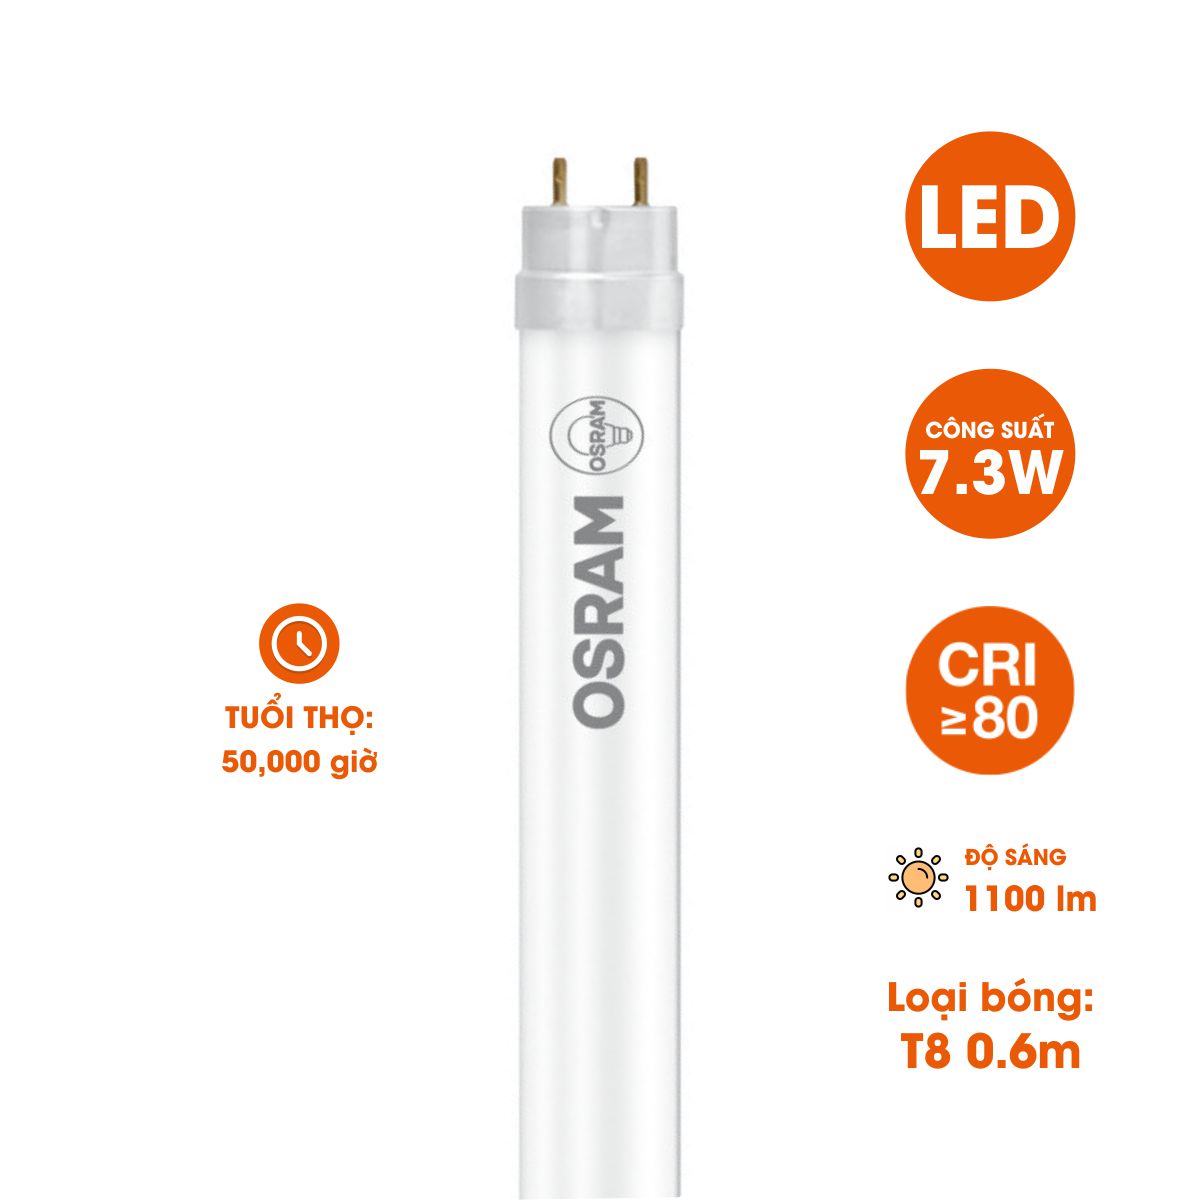 Bóng đèn LED T8 Osram SubstiTUBE Advanced 7.3W 6500K 1,100 lm 0.6m G13 50,000 giờ - Ánh sáng Trắng